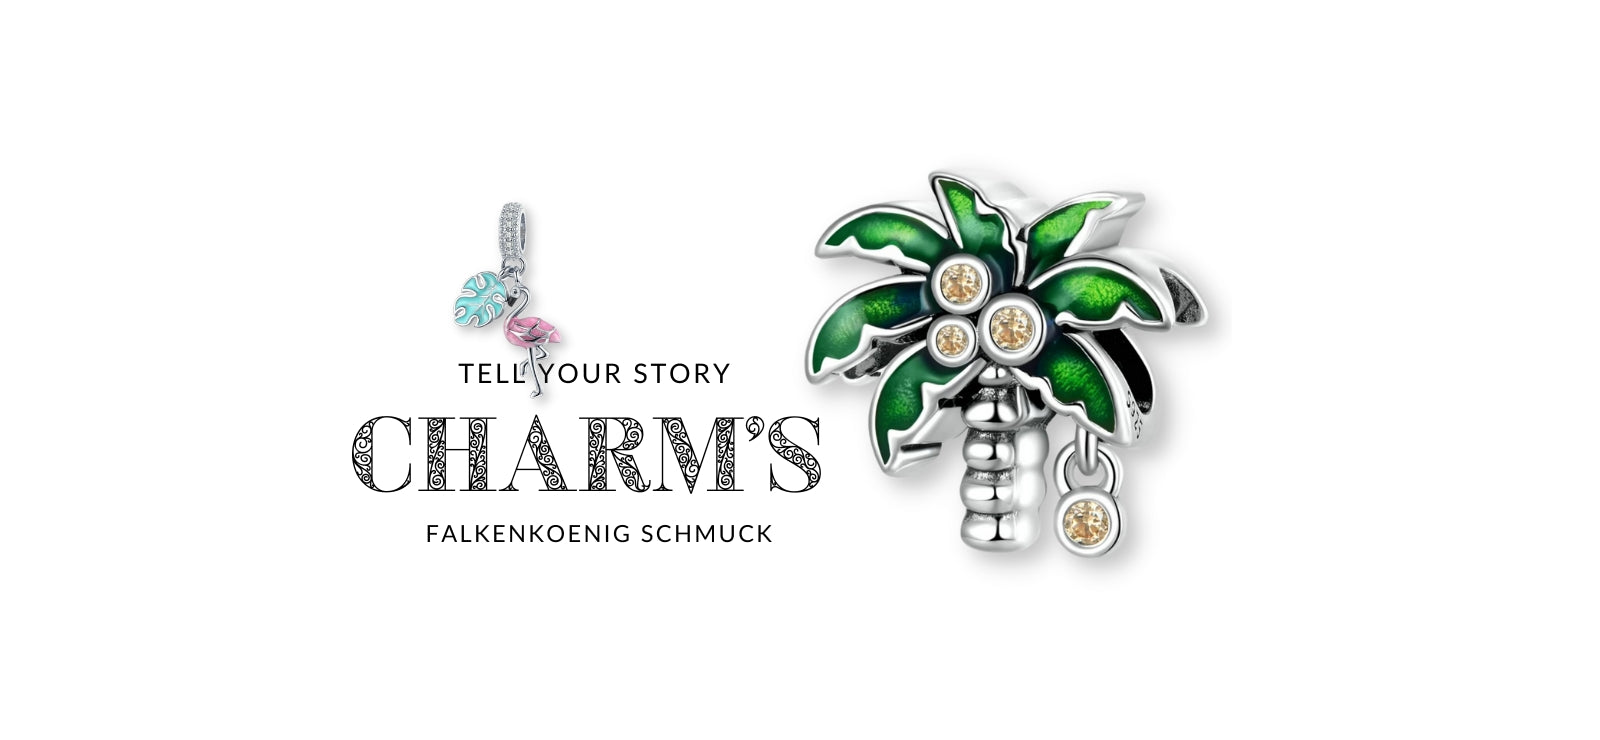  Charm-Anhänger für Charm-Armband - Vielfältige Sammlung von Charms Anhängern für personalisierten Schmuck